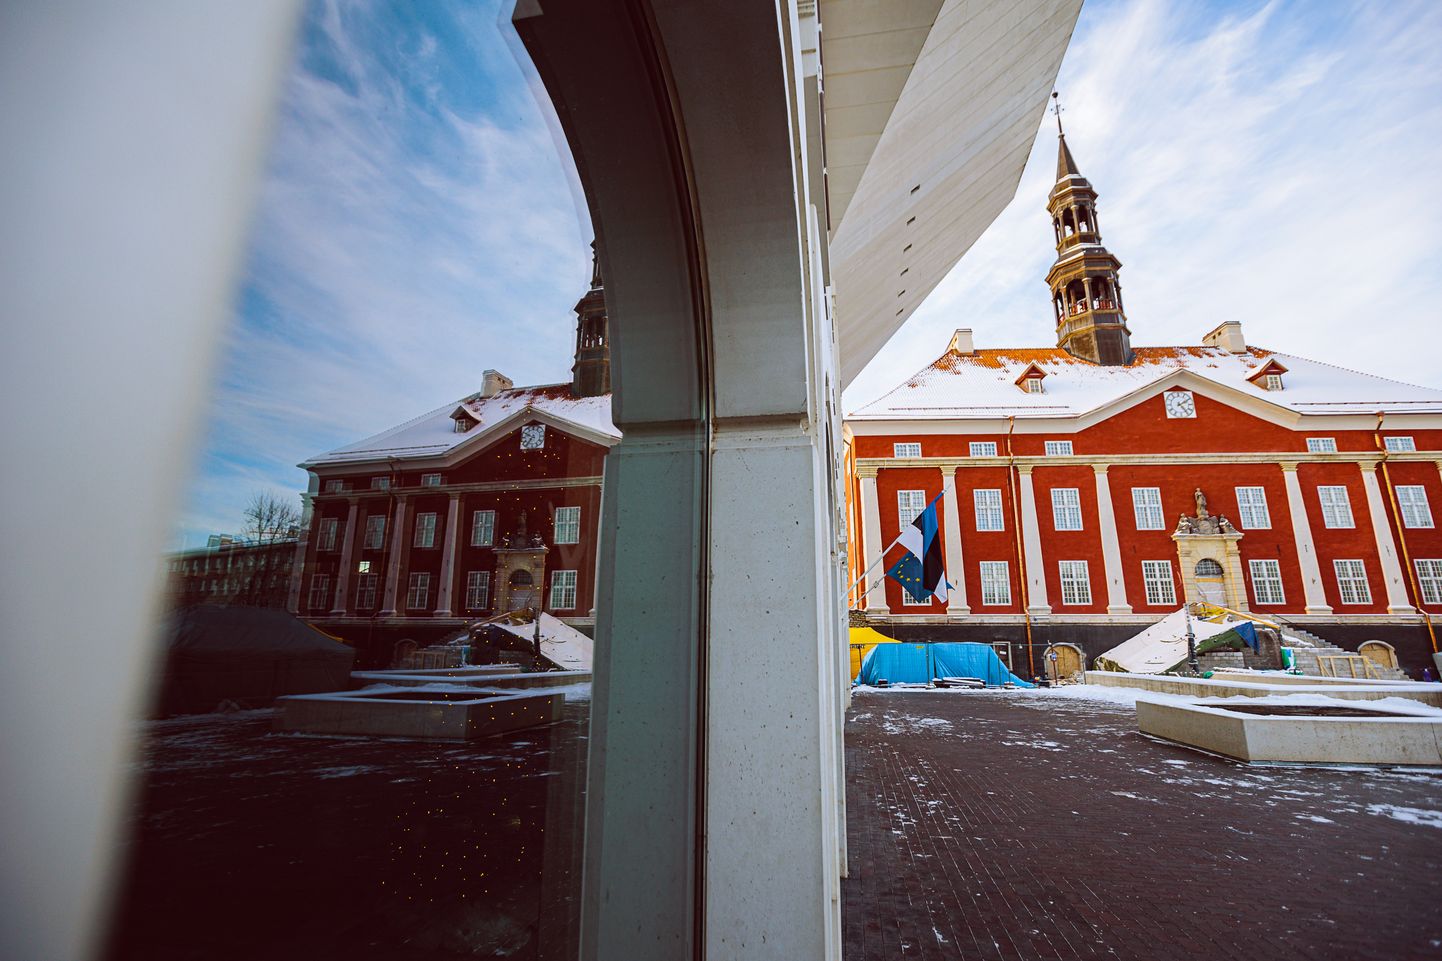 Нарвская ратуша и ее отражение в окне Нарвского колледжа Тартуского университета.